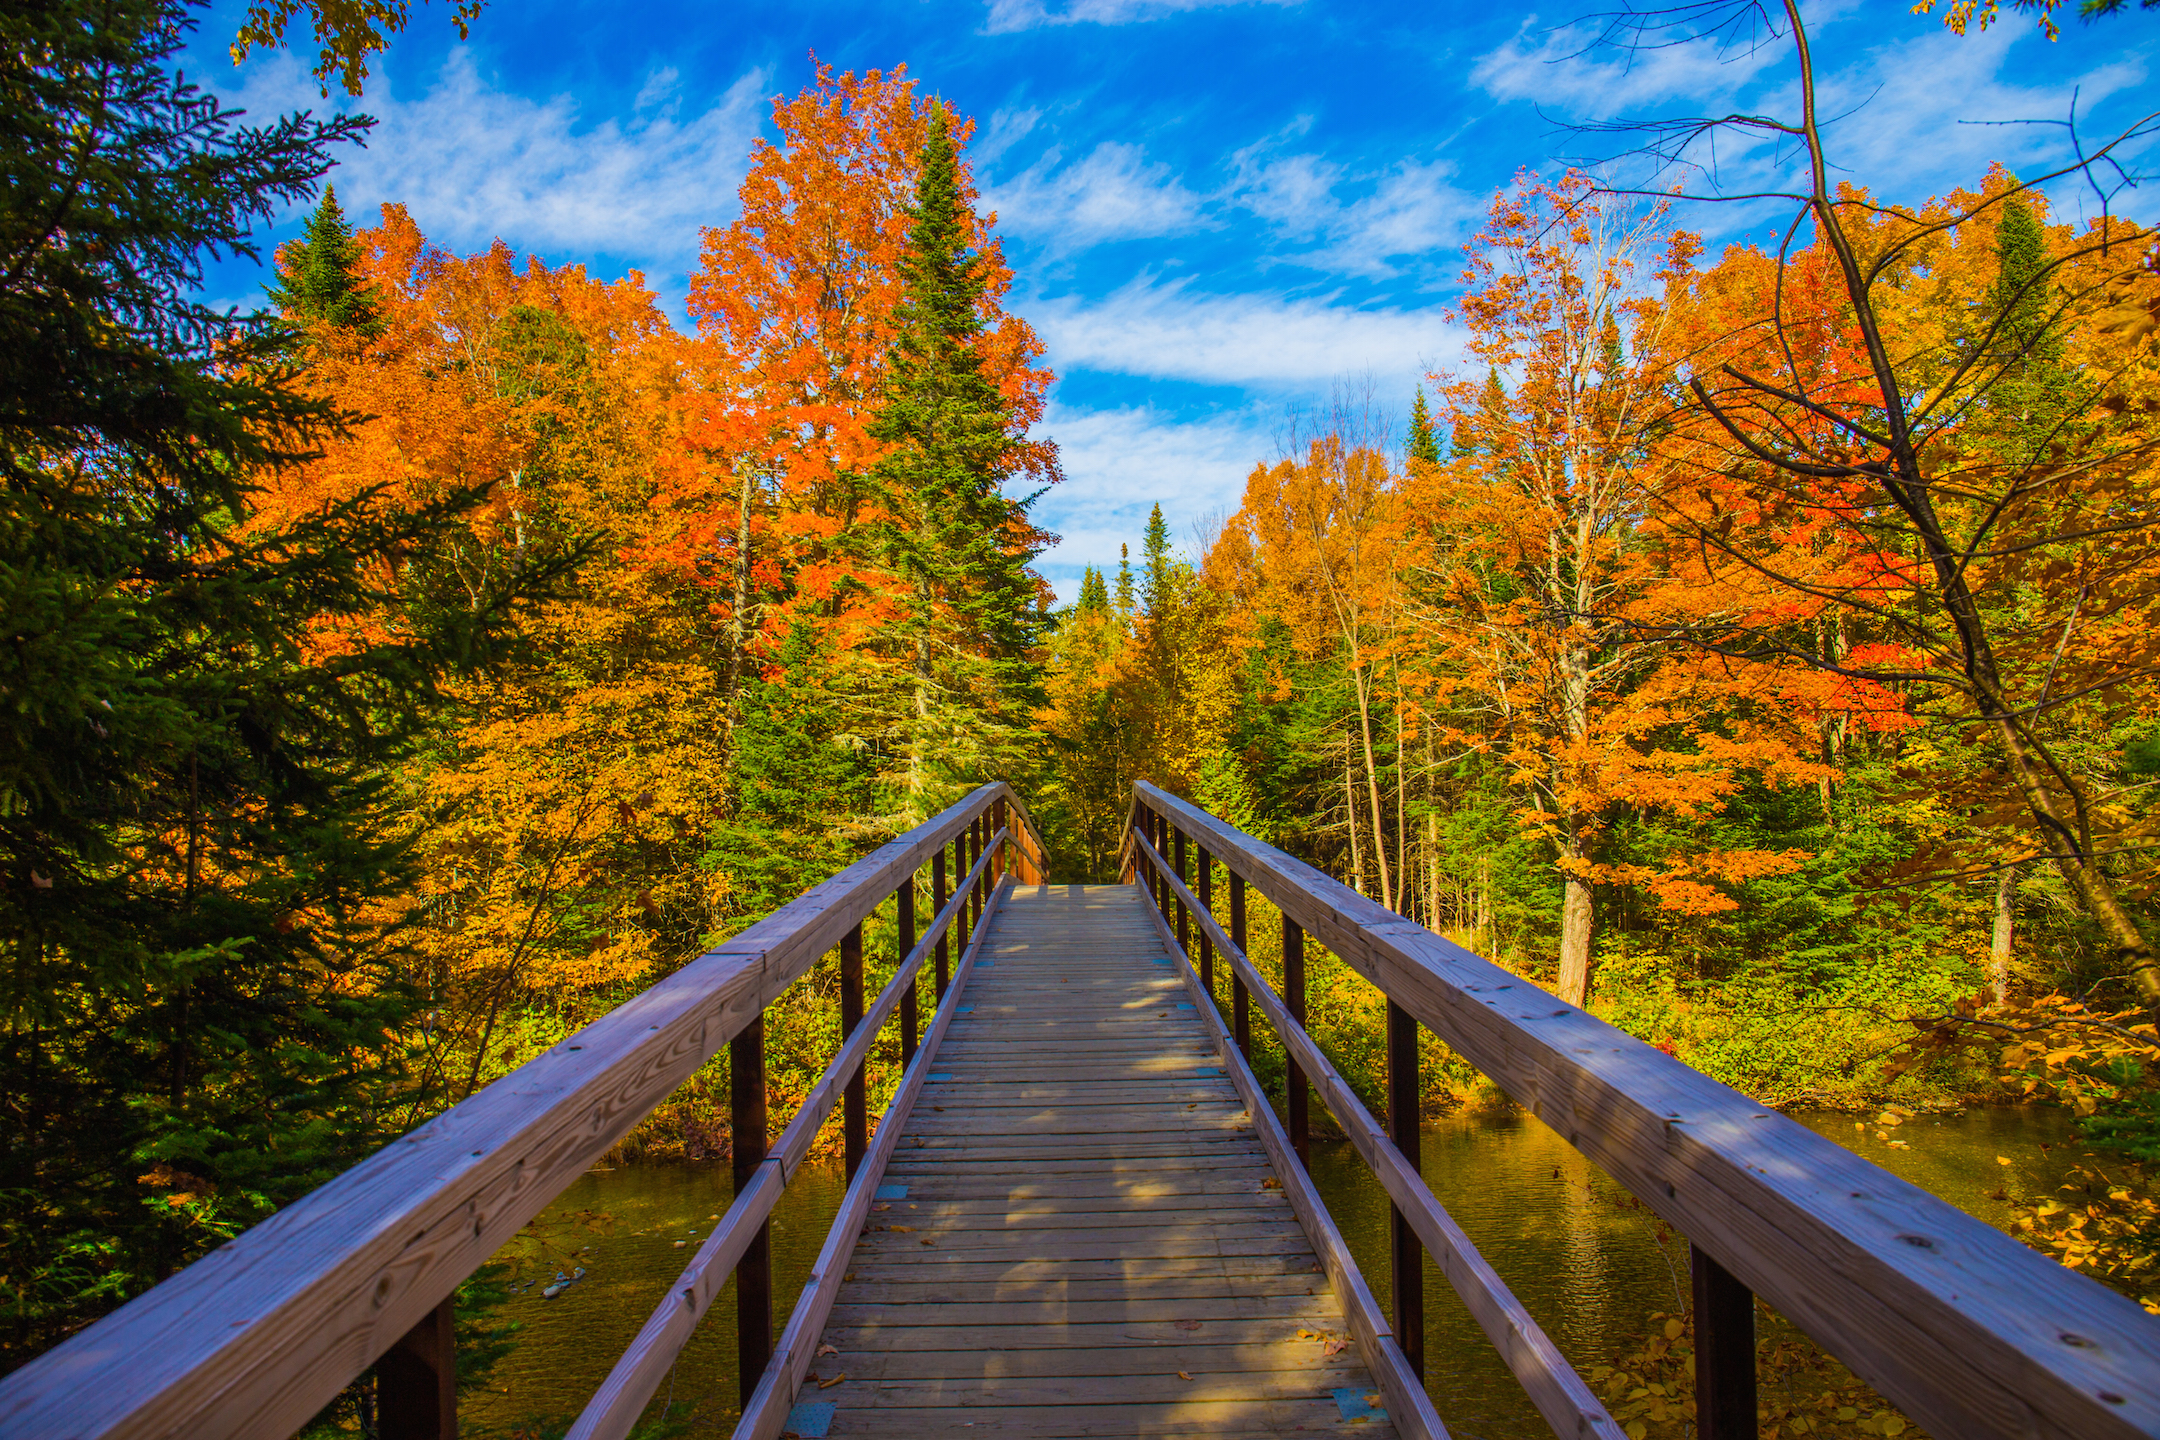 The Bridge to Peak Foliage